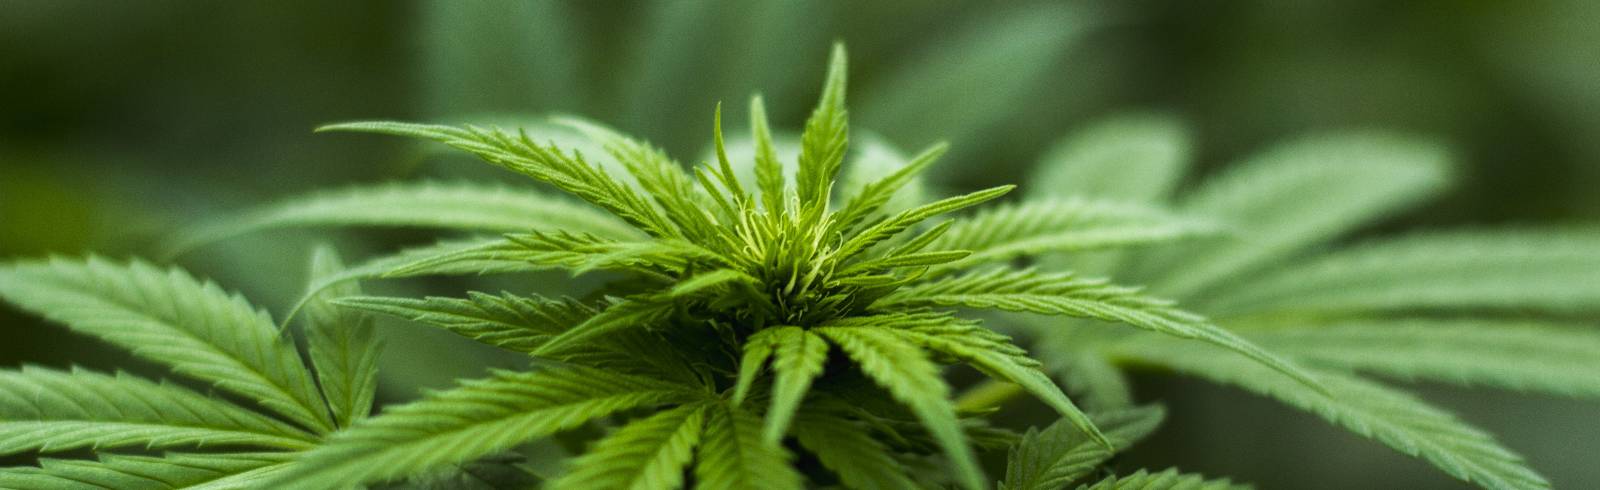 Polizei stieß zufällig auf Cannabisaufzucht